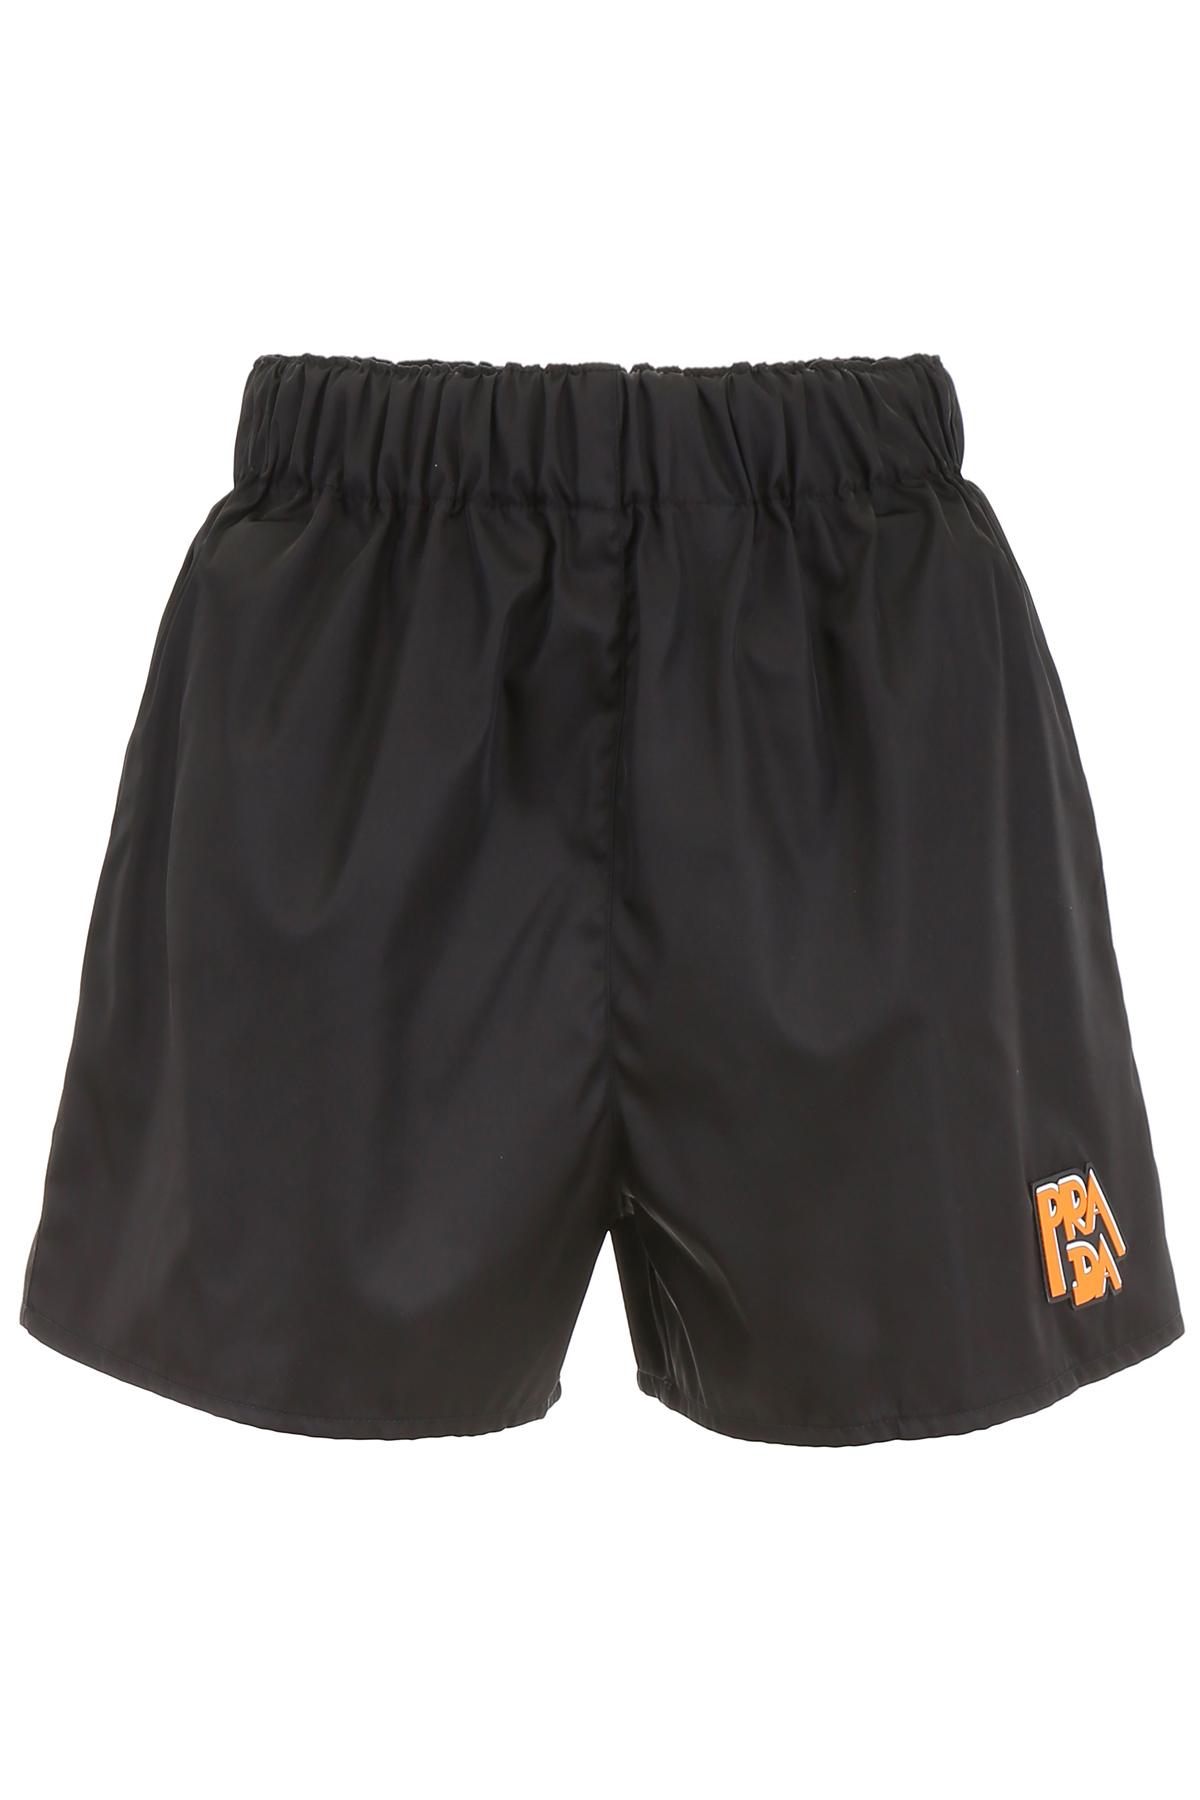 Prada Logo Patch Nylon Shorts in Black | Lyst